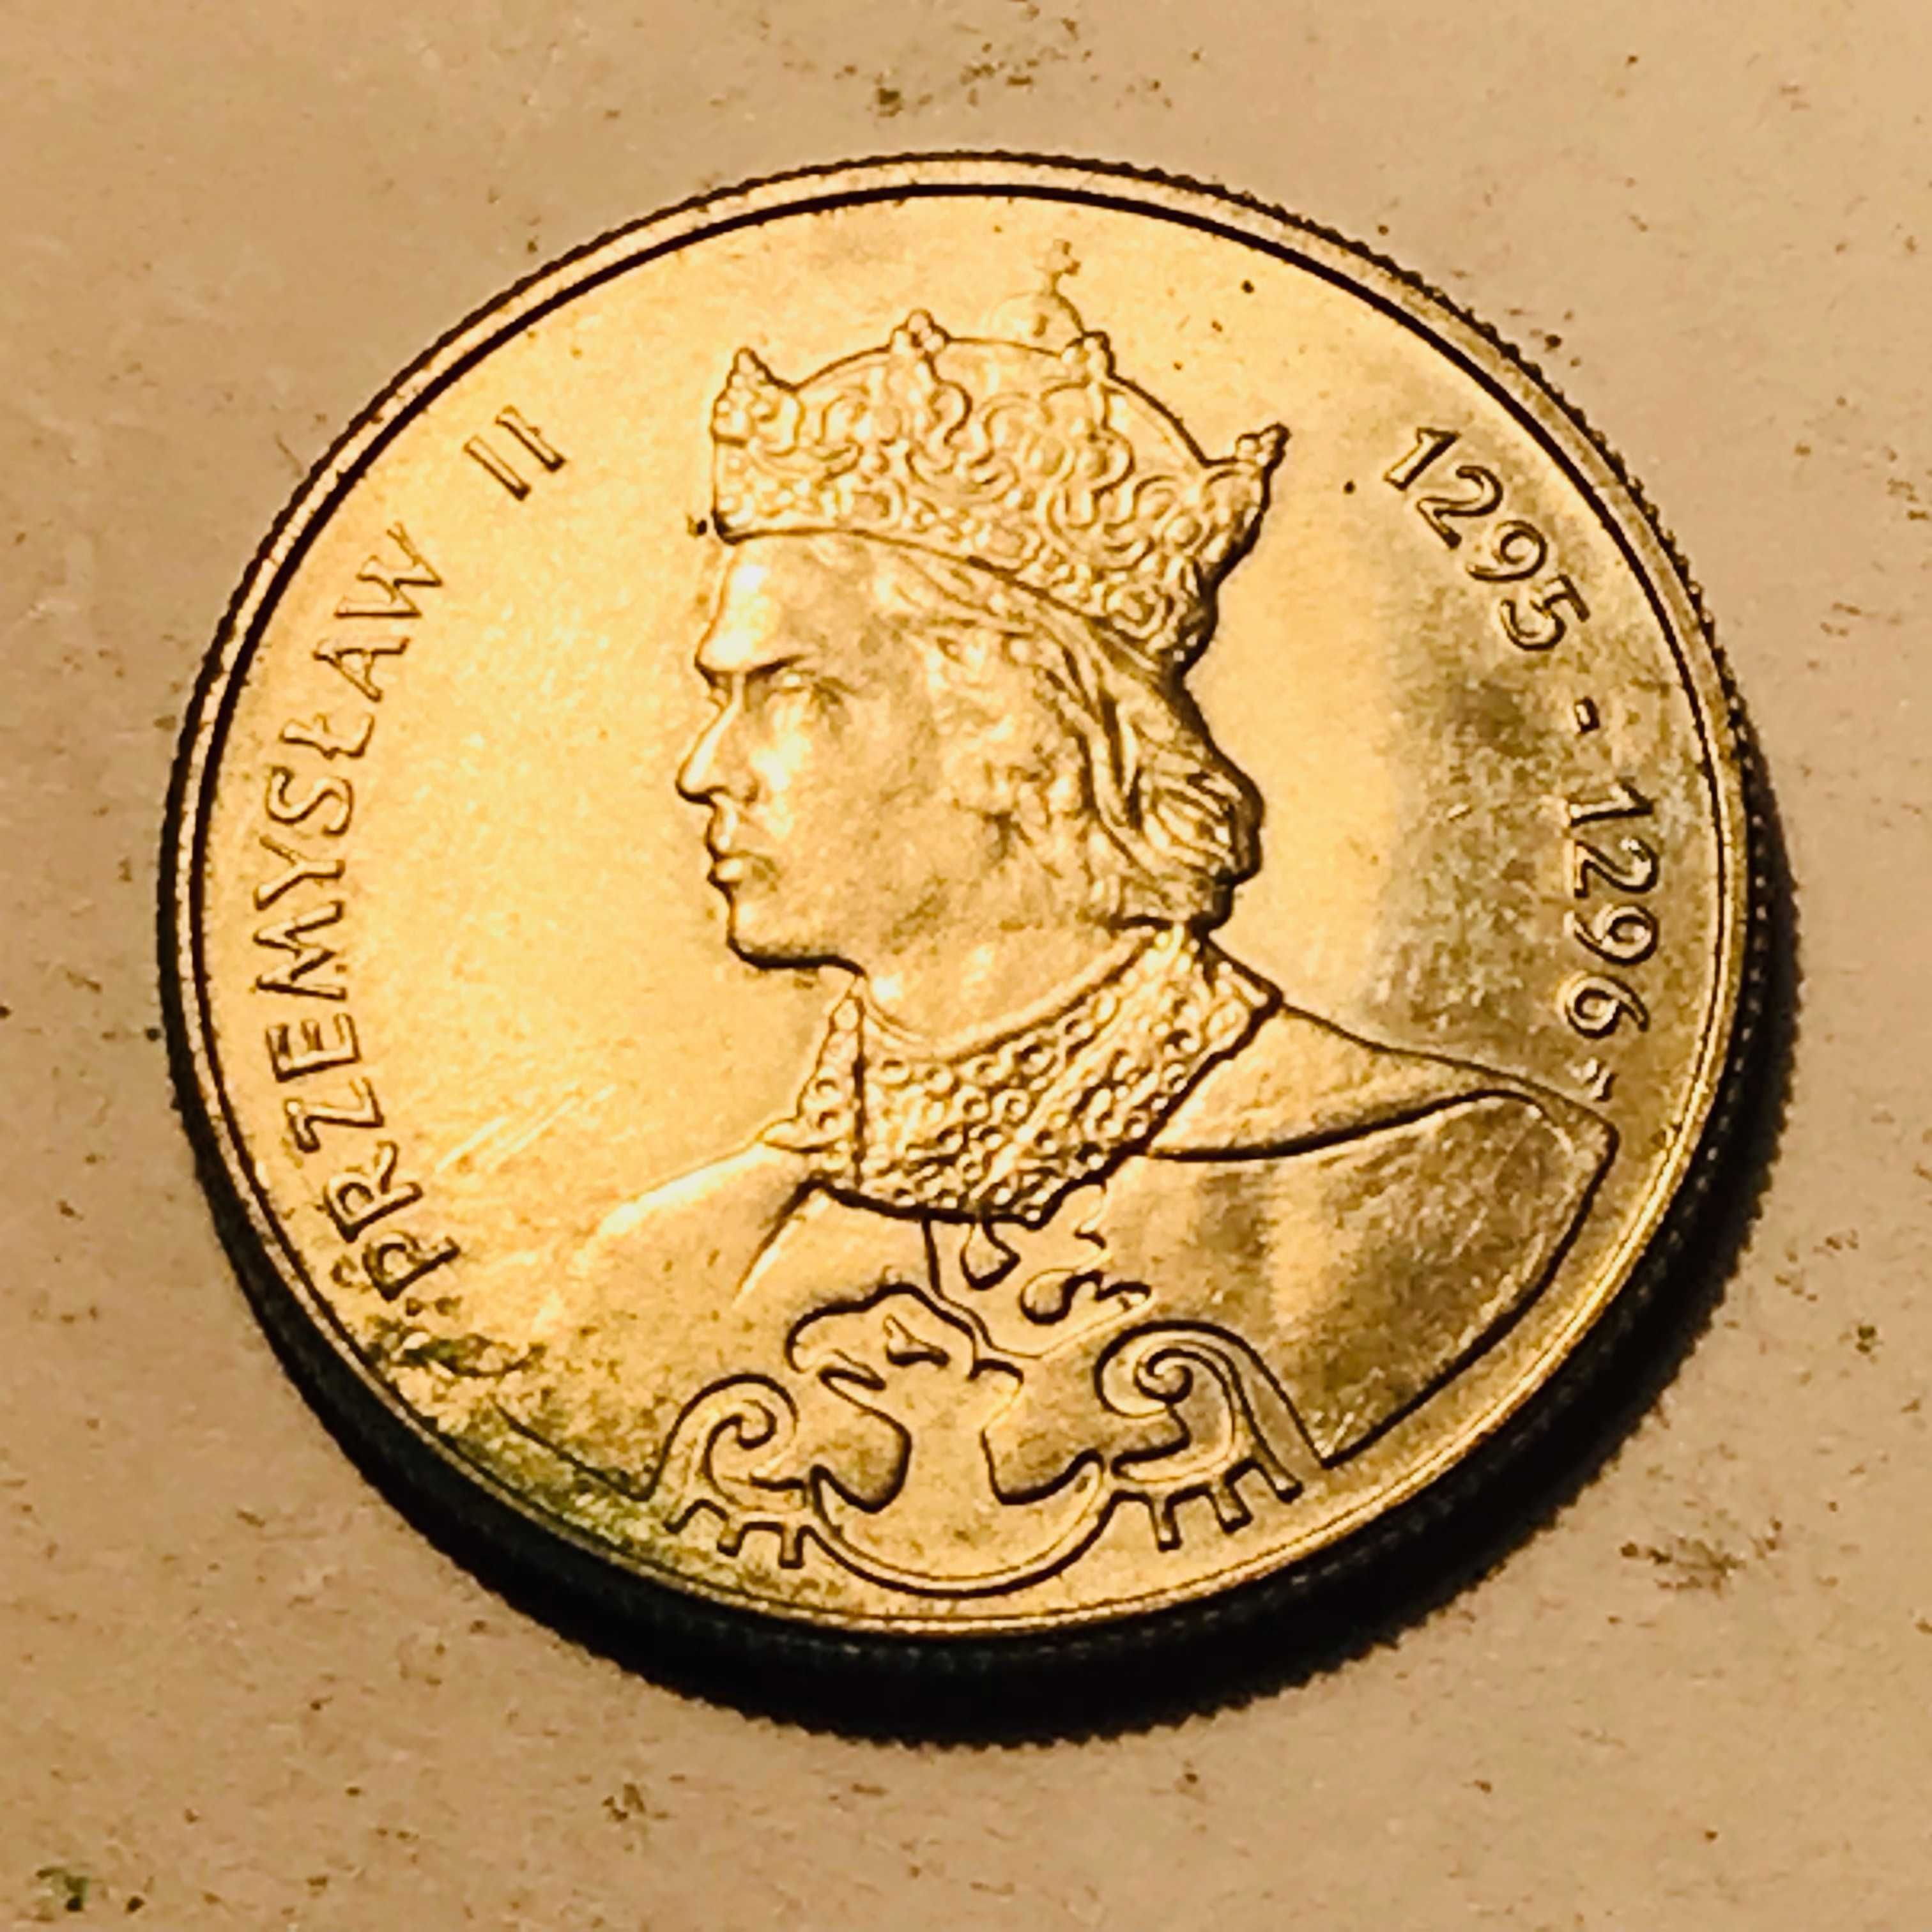 Moneta 100 złotych (PRZEMYSŁAW II ) - 1985 rok